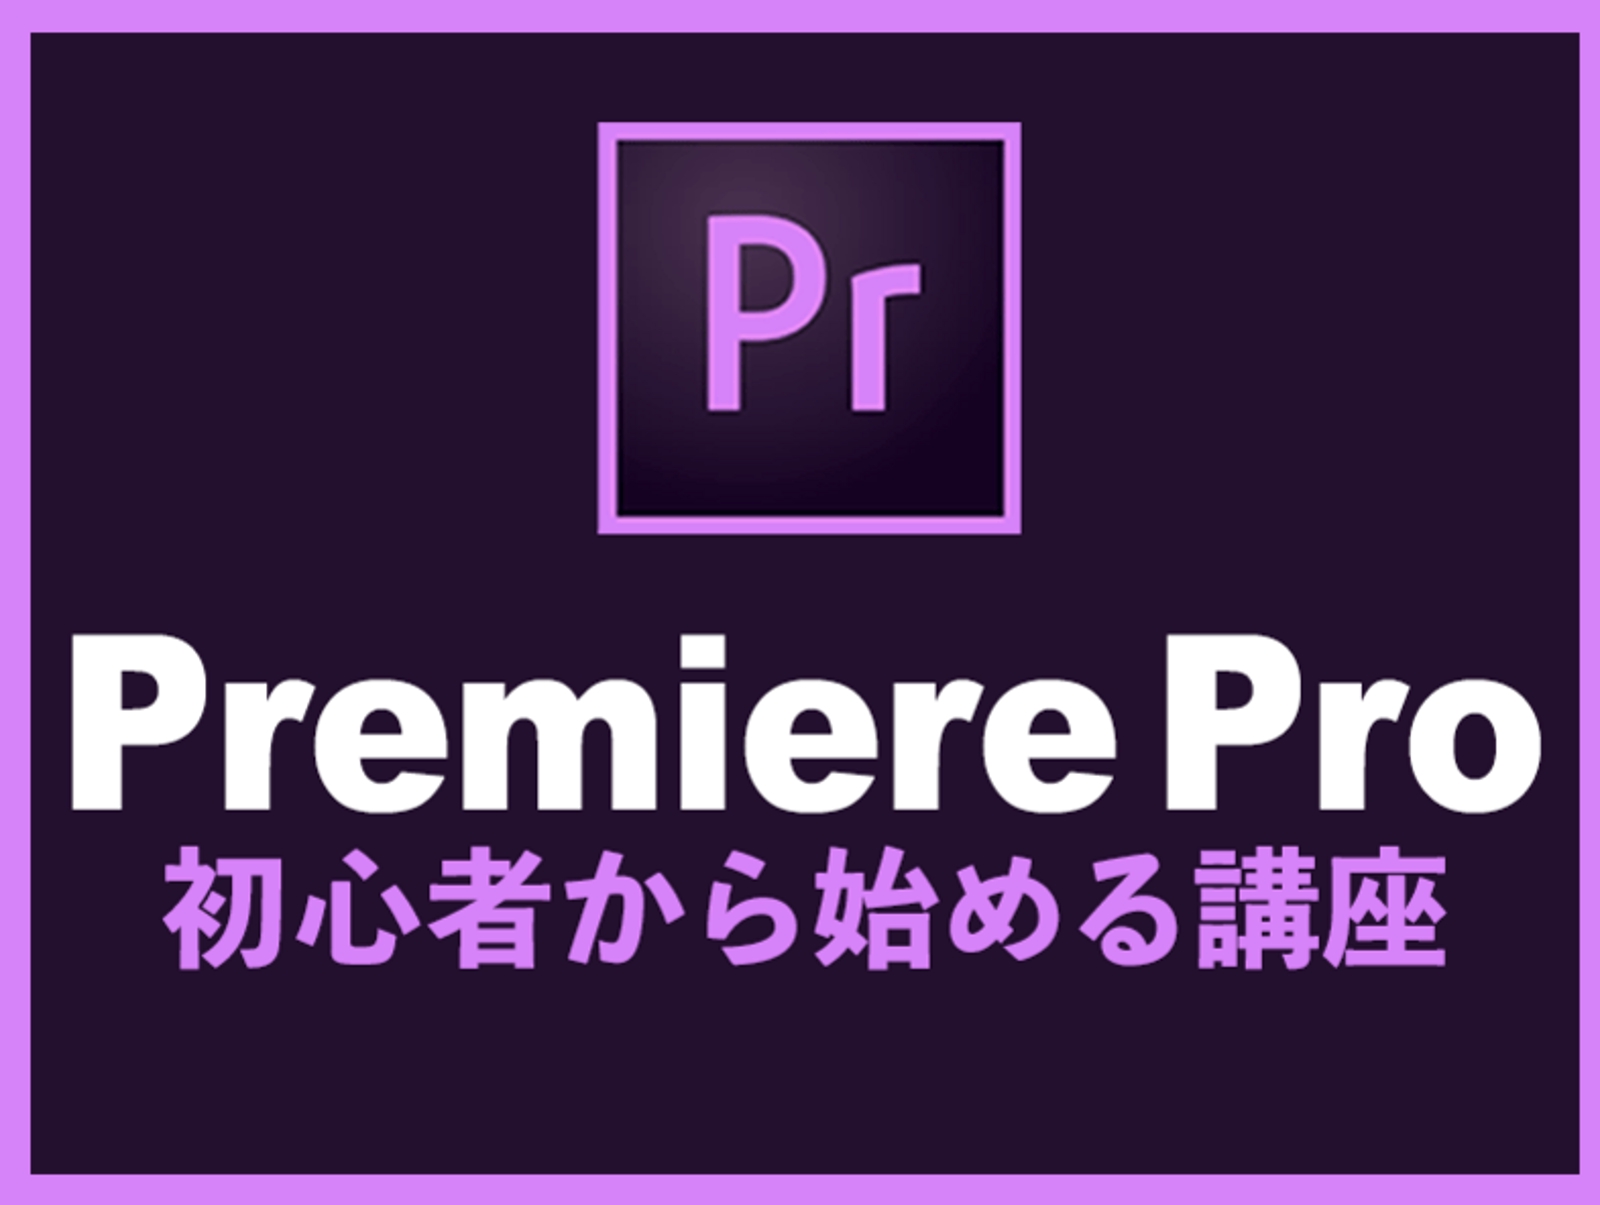 Premiere Proをこれから始めるレッスン【初心者向け】-image1